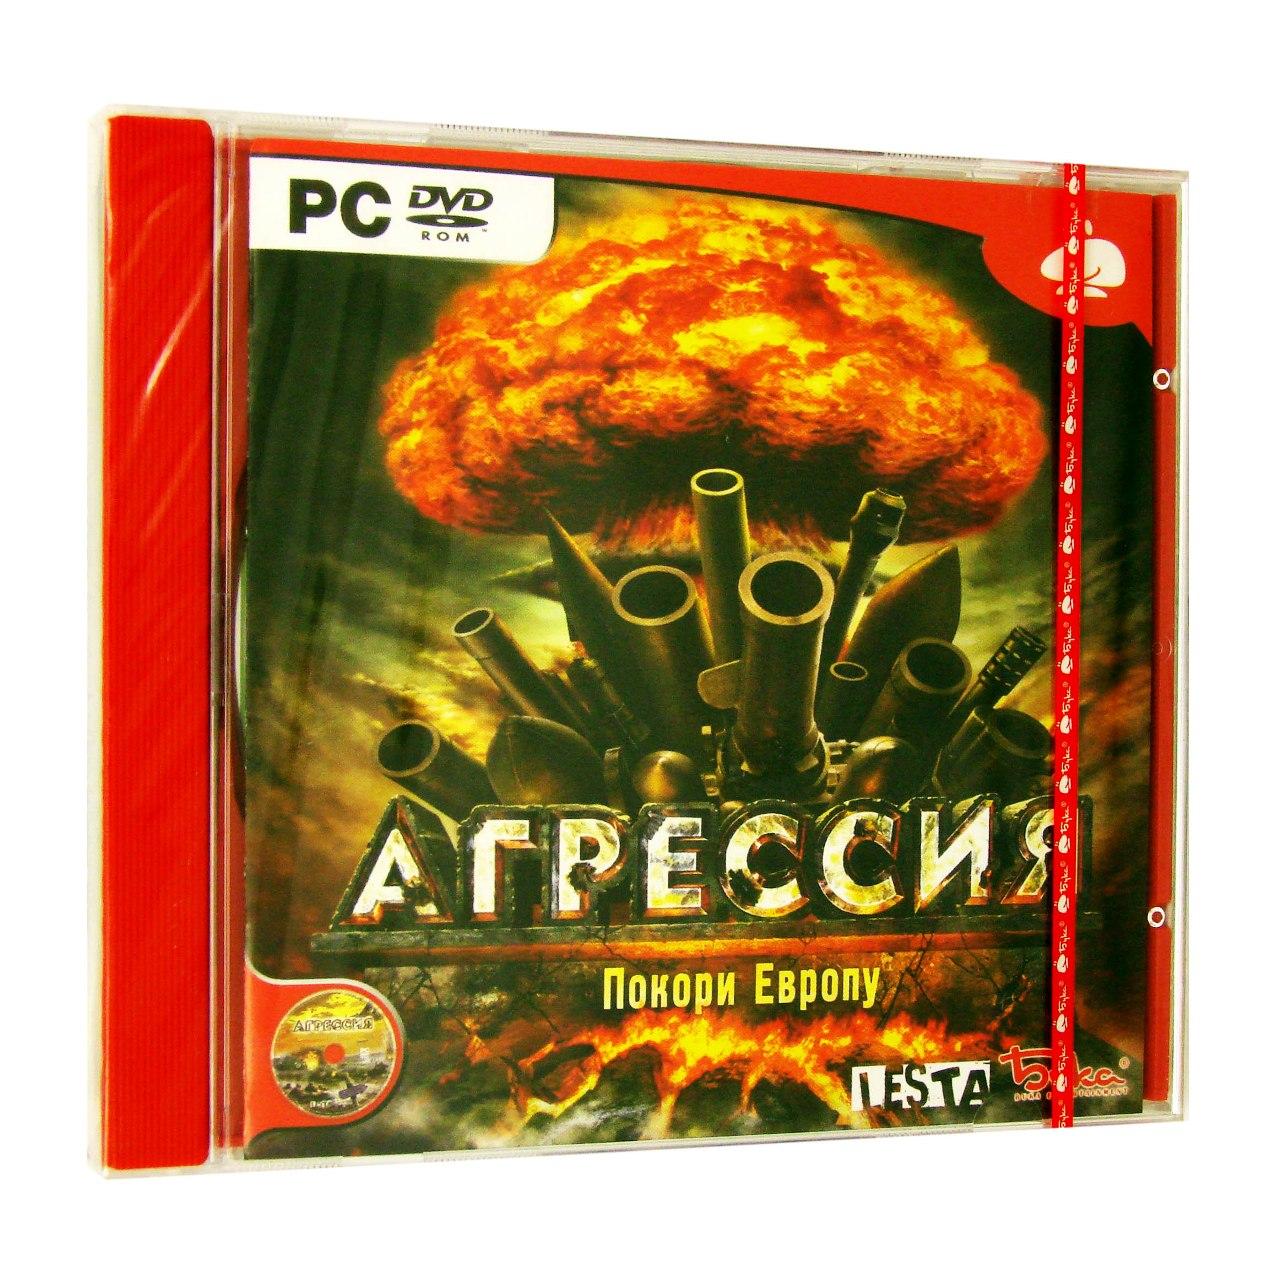 Компьютерный компакт-диск Агрессия (ПК), фирма "Бука", 1DVD